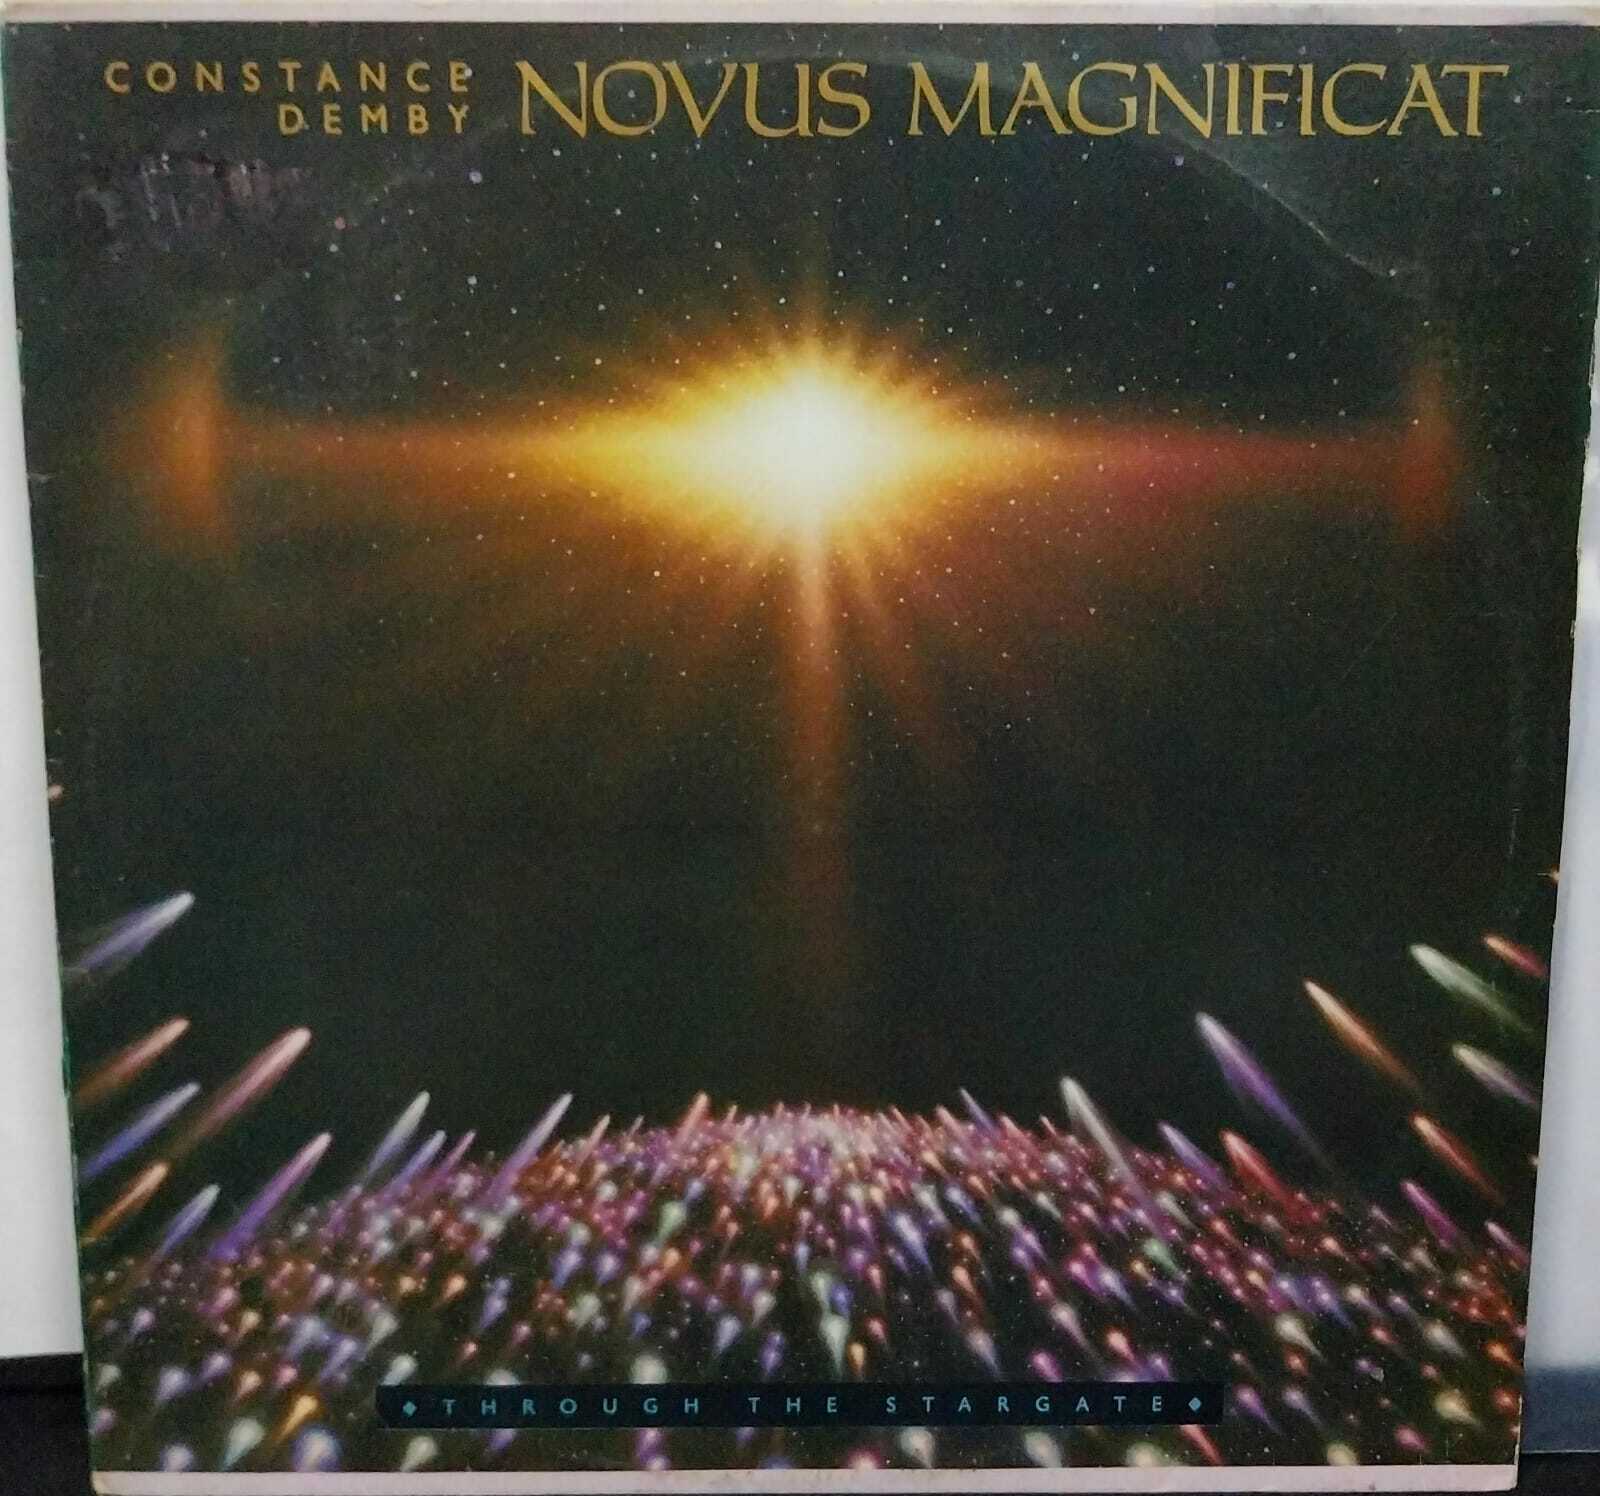 Vinil - Constance Demby - Novus Magnificat Through the Stargate